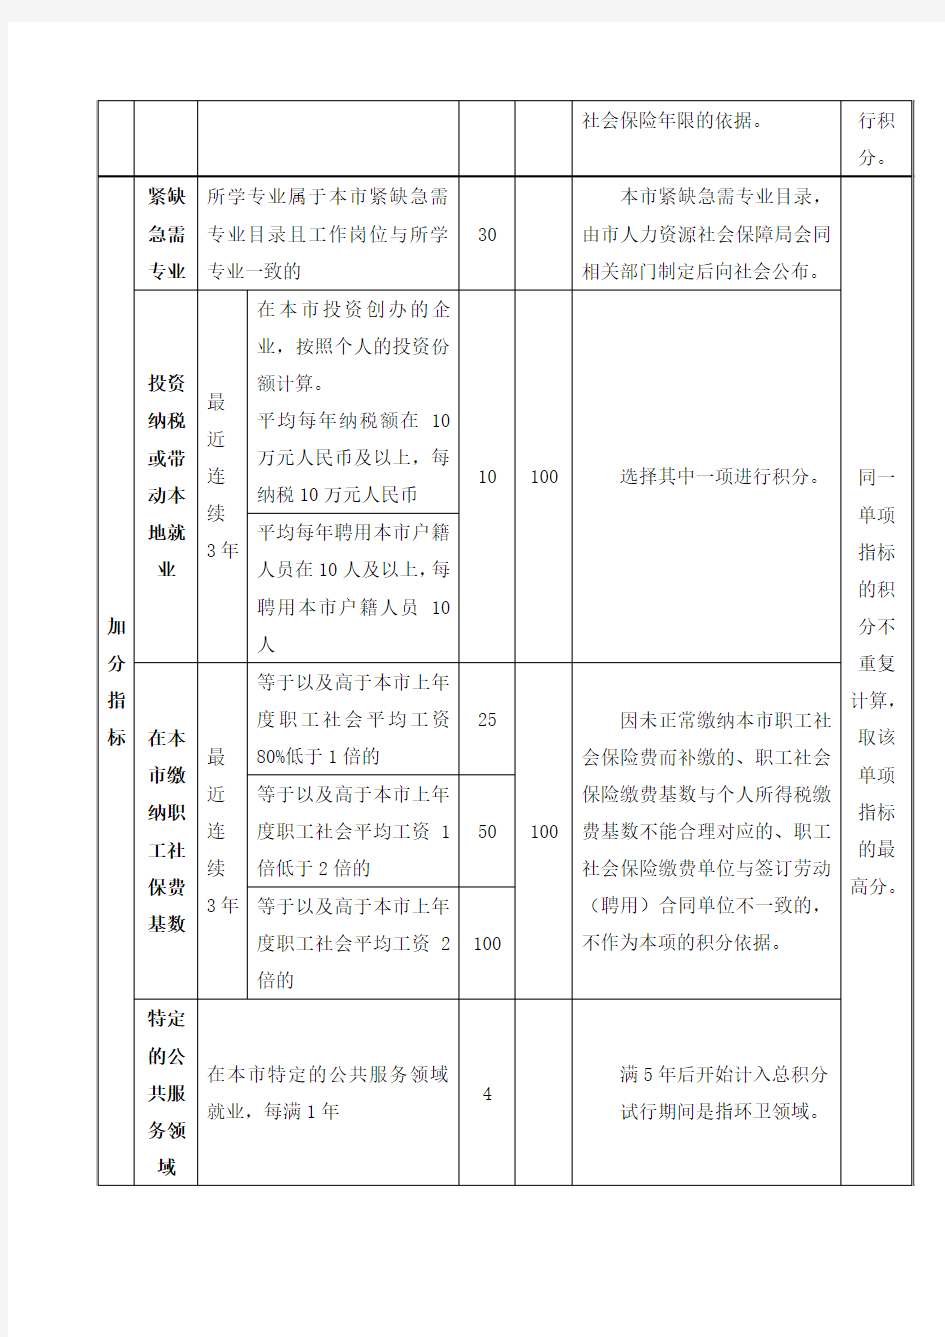 上海居住证积分指标与分值表